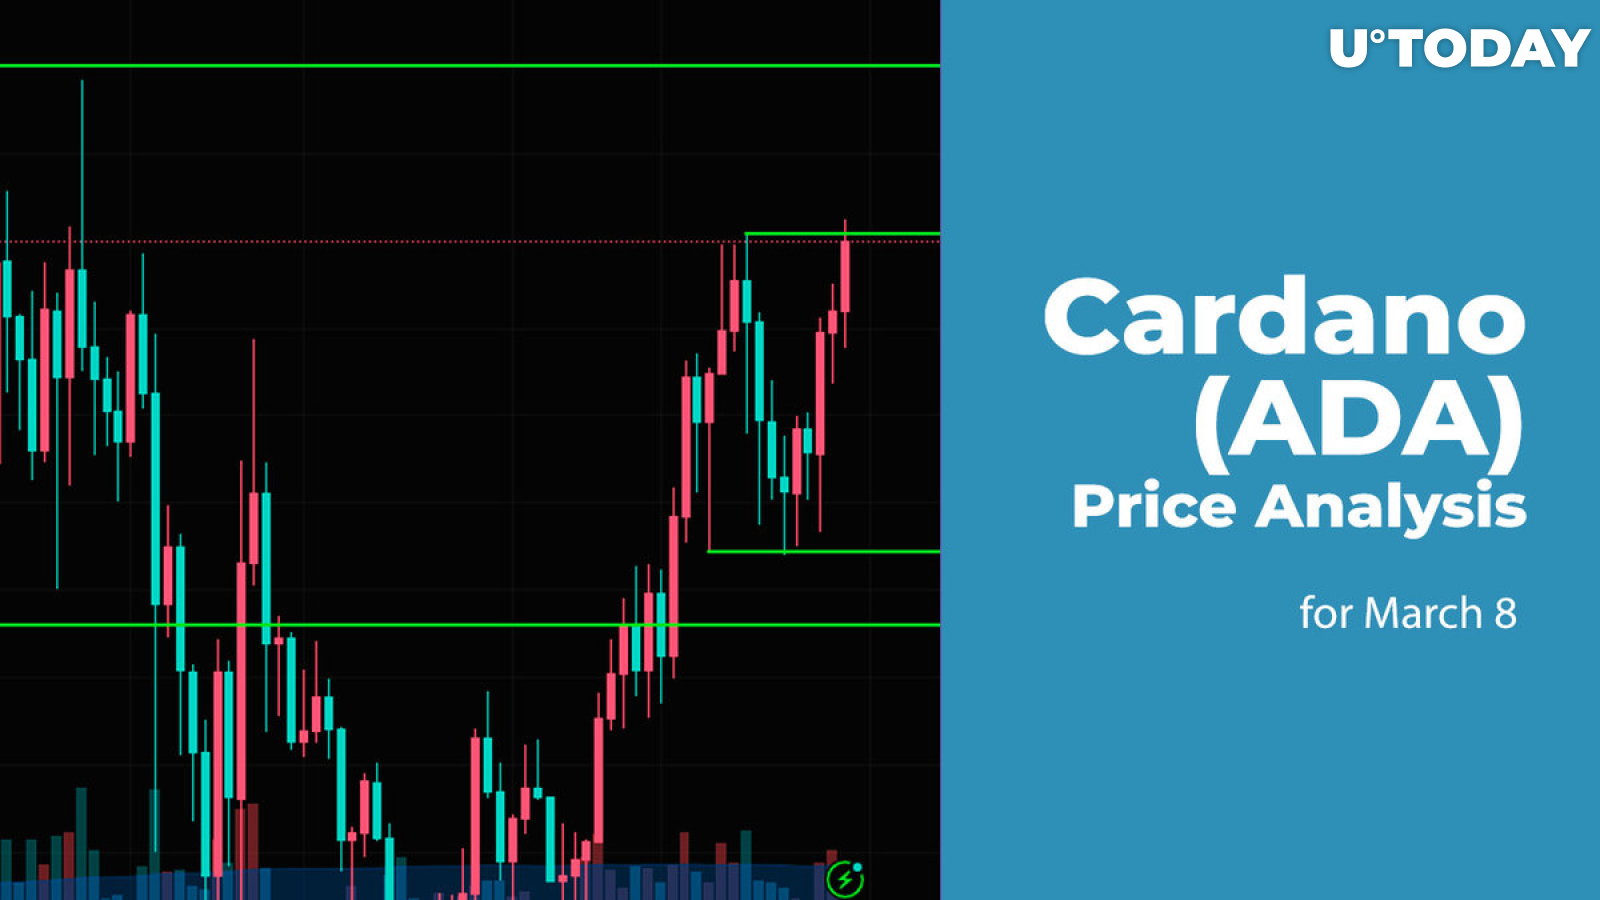 Cardano (ADA) Price Prediction for March 8